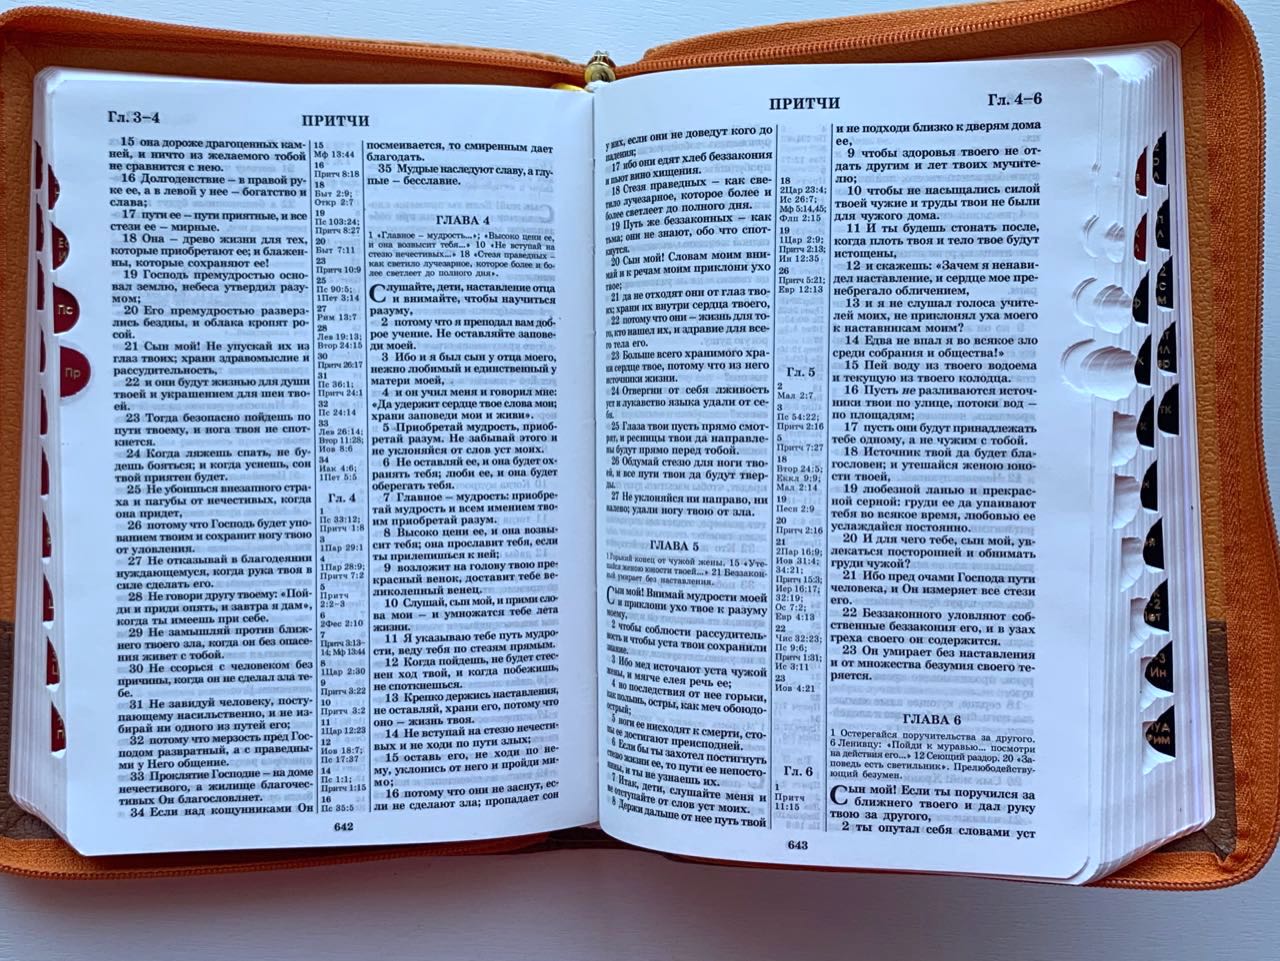 БИБЛИЯ 046zti формат, переплет из искусственной кожи на молнии с индексами, термо орнамент и надпись золотом "Библия", цвет коричневый металлик, средний формат, 132*182 мм, цветные карты, шрифт 12 кегель